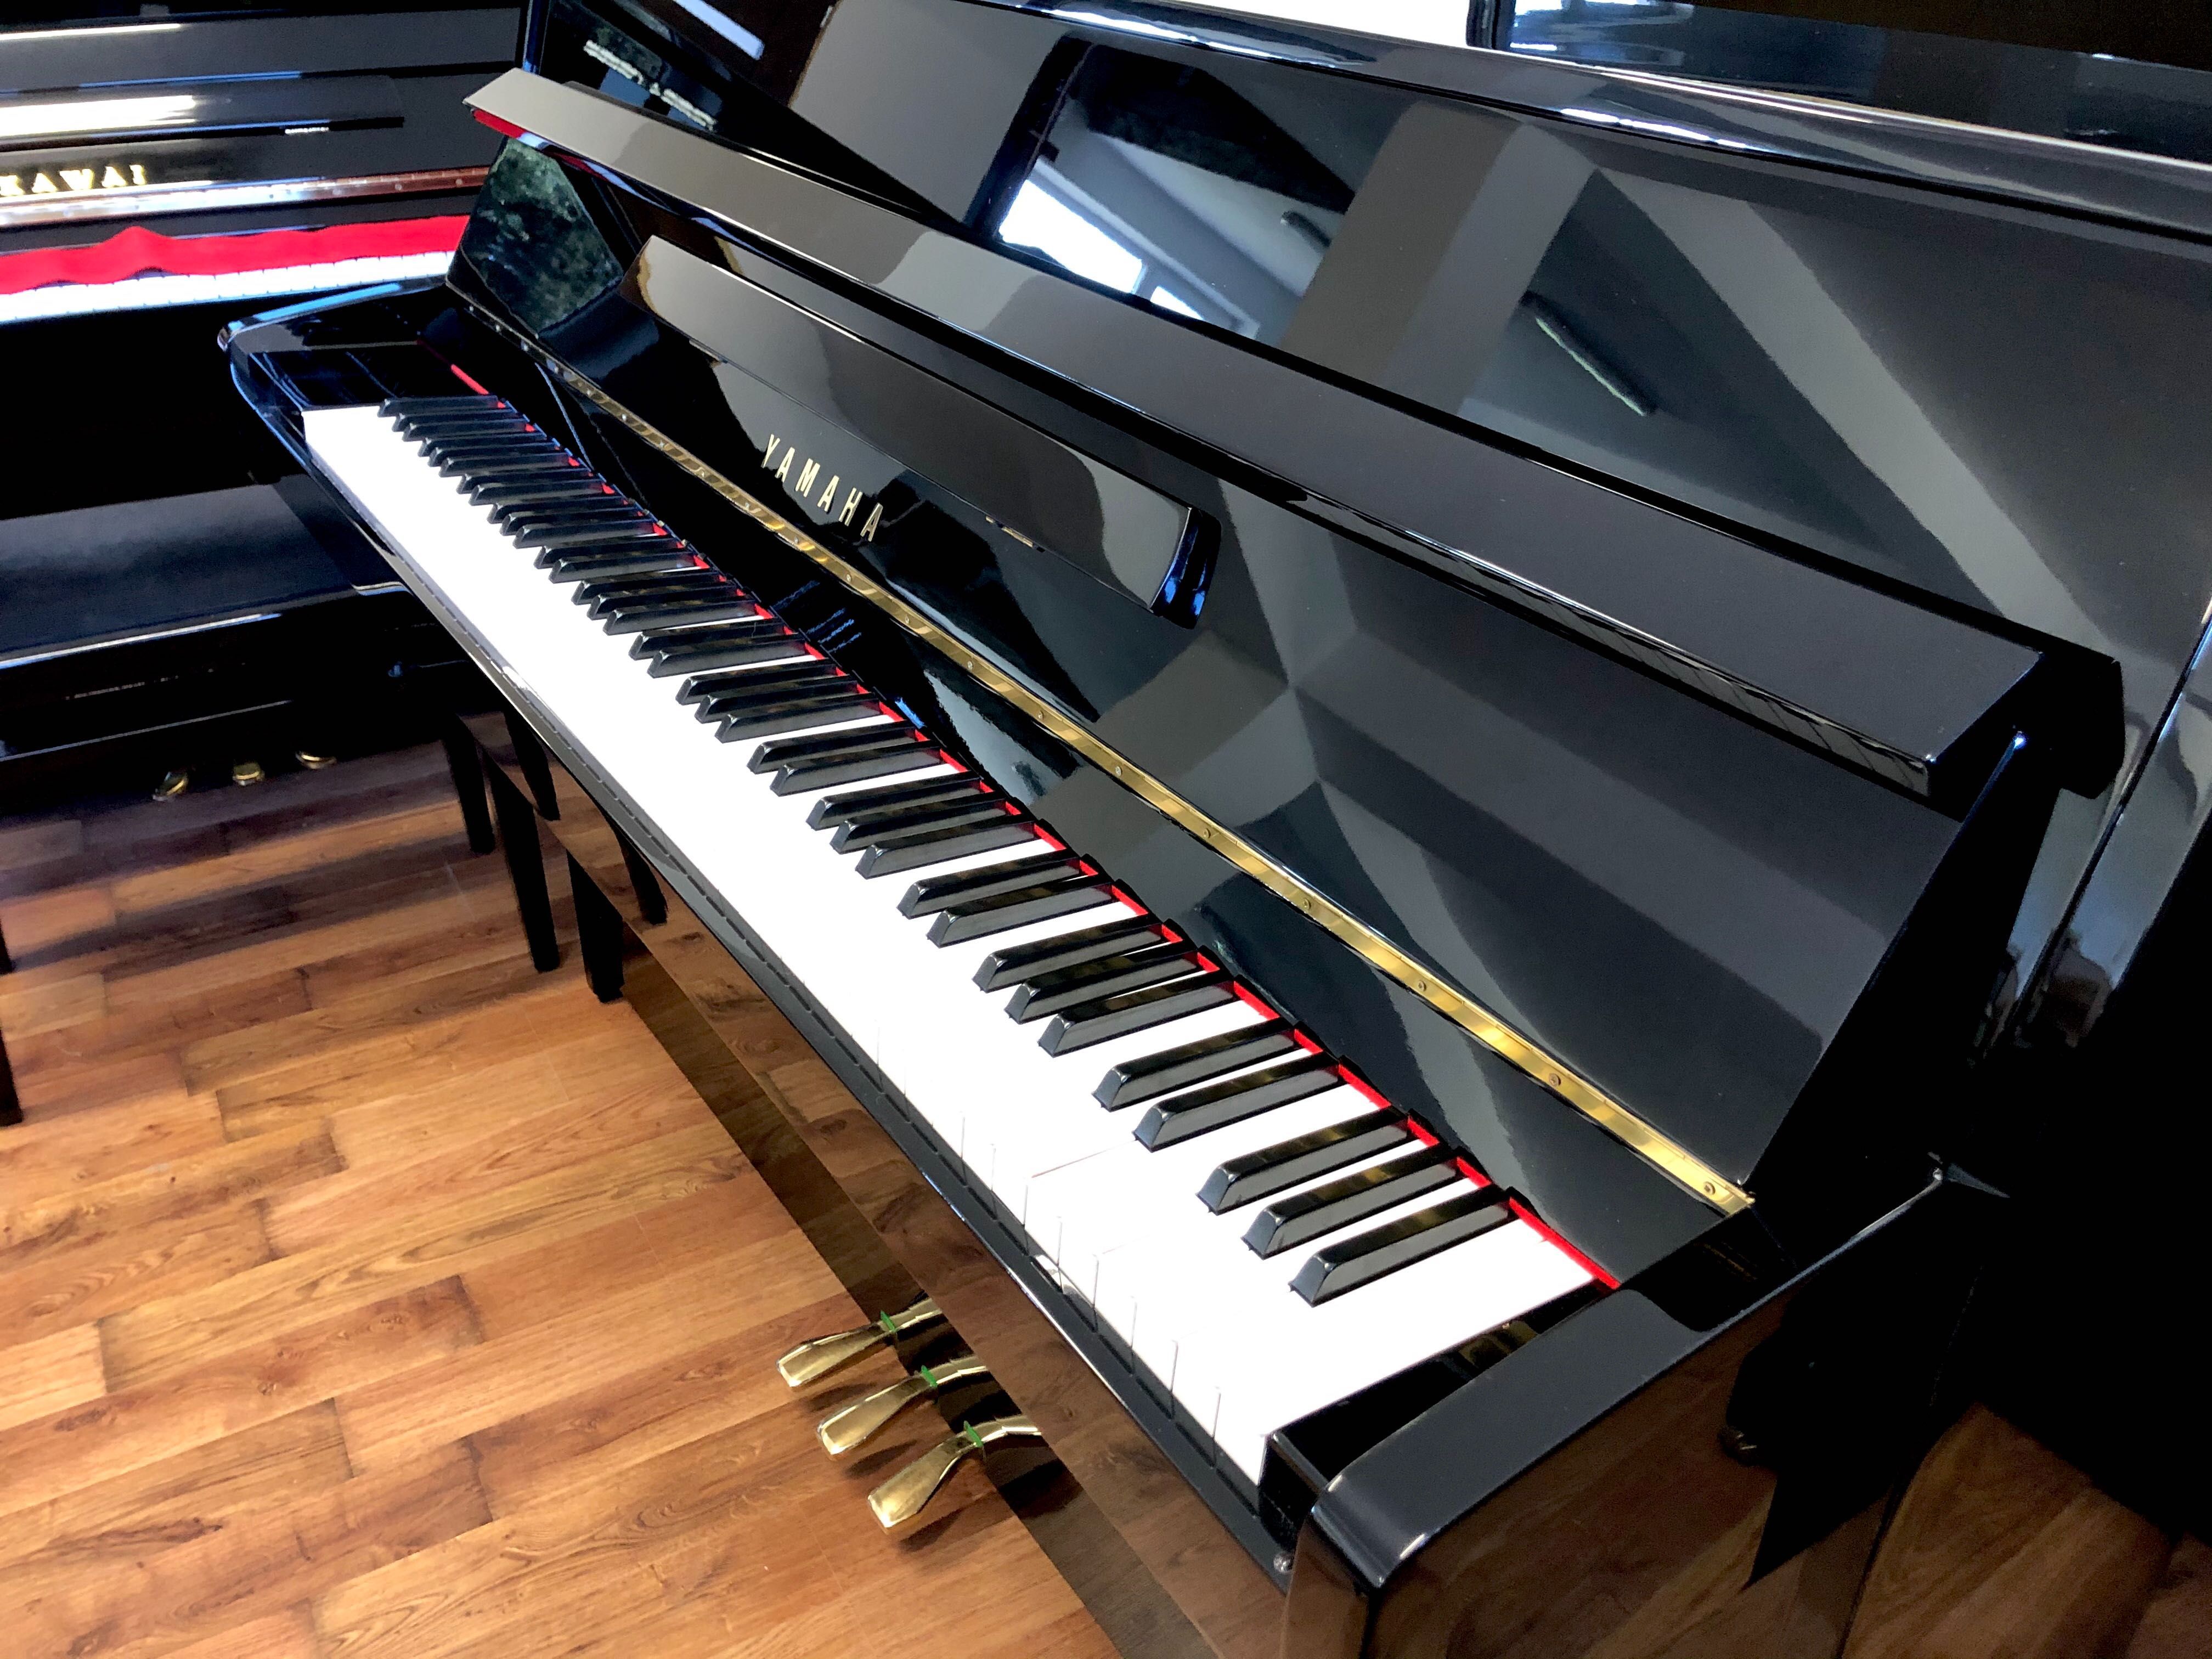 Pianino Yamaha C108 czarne